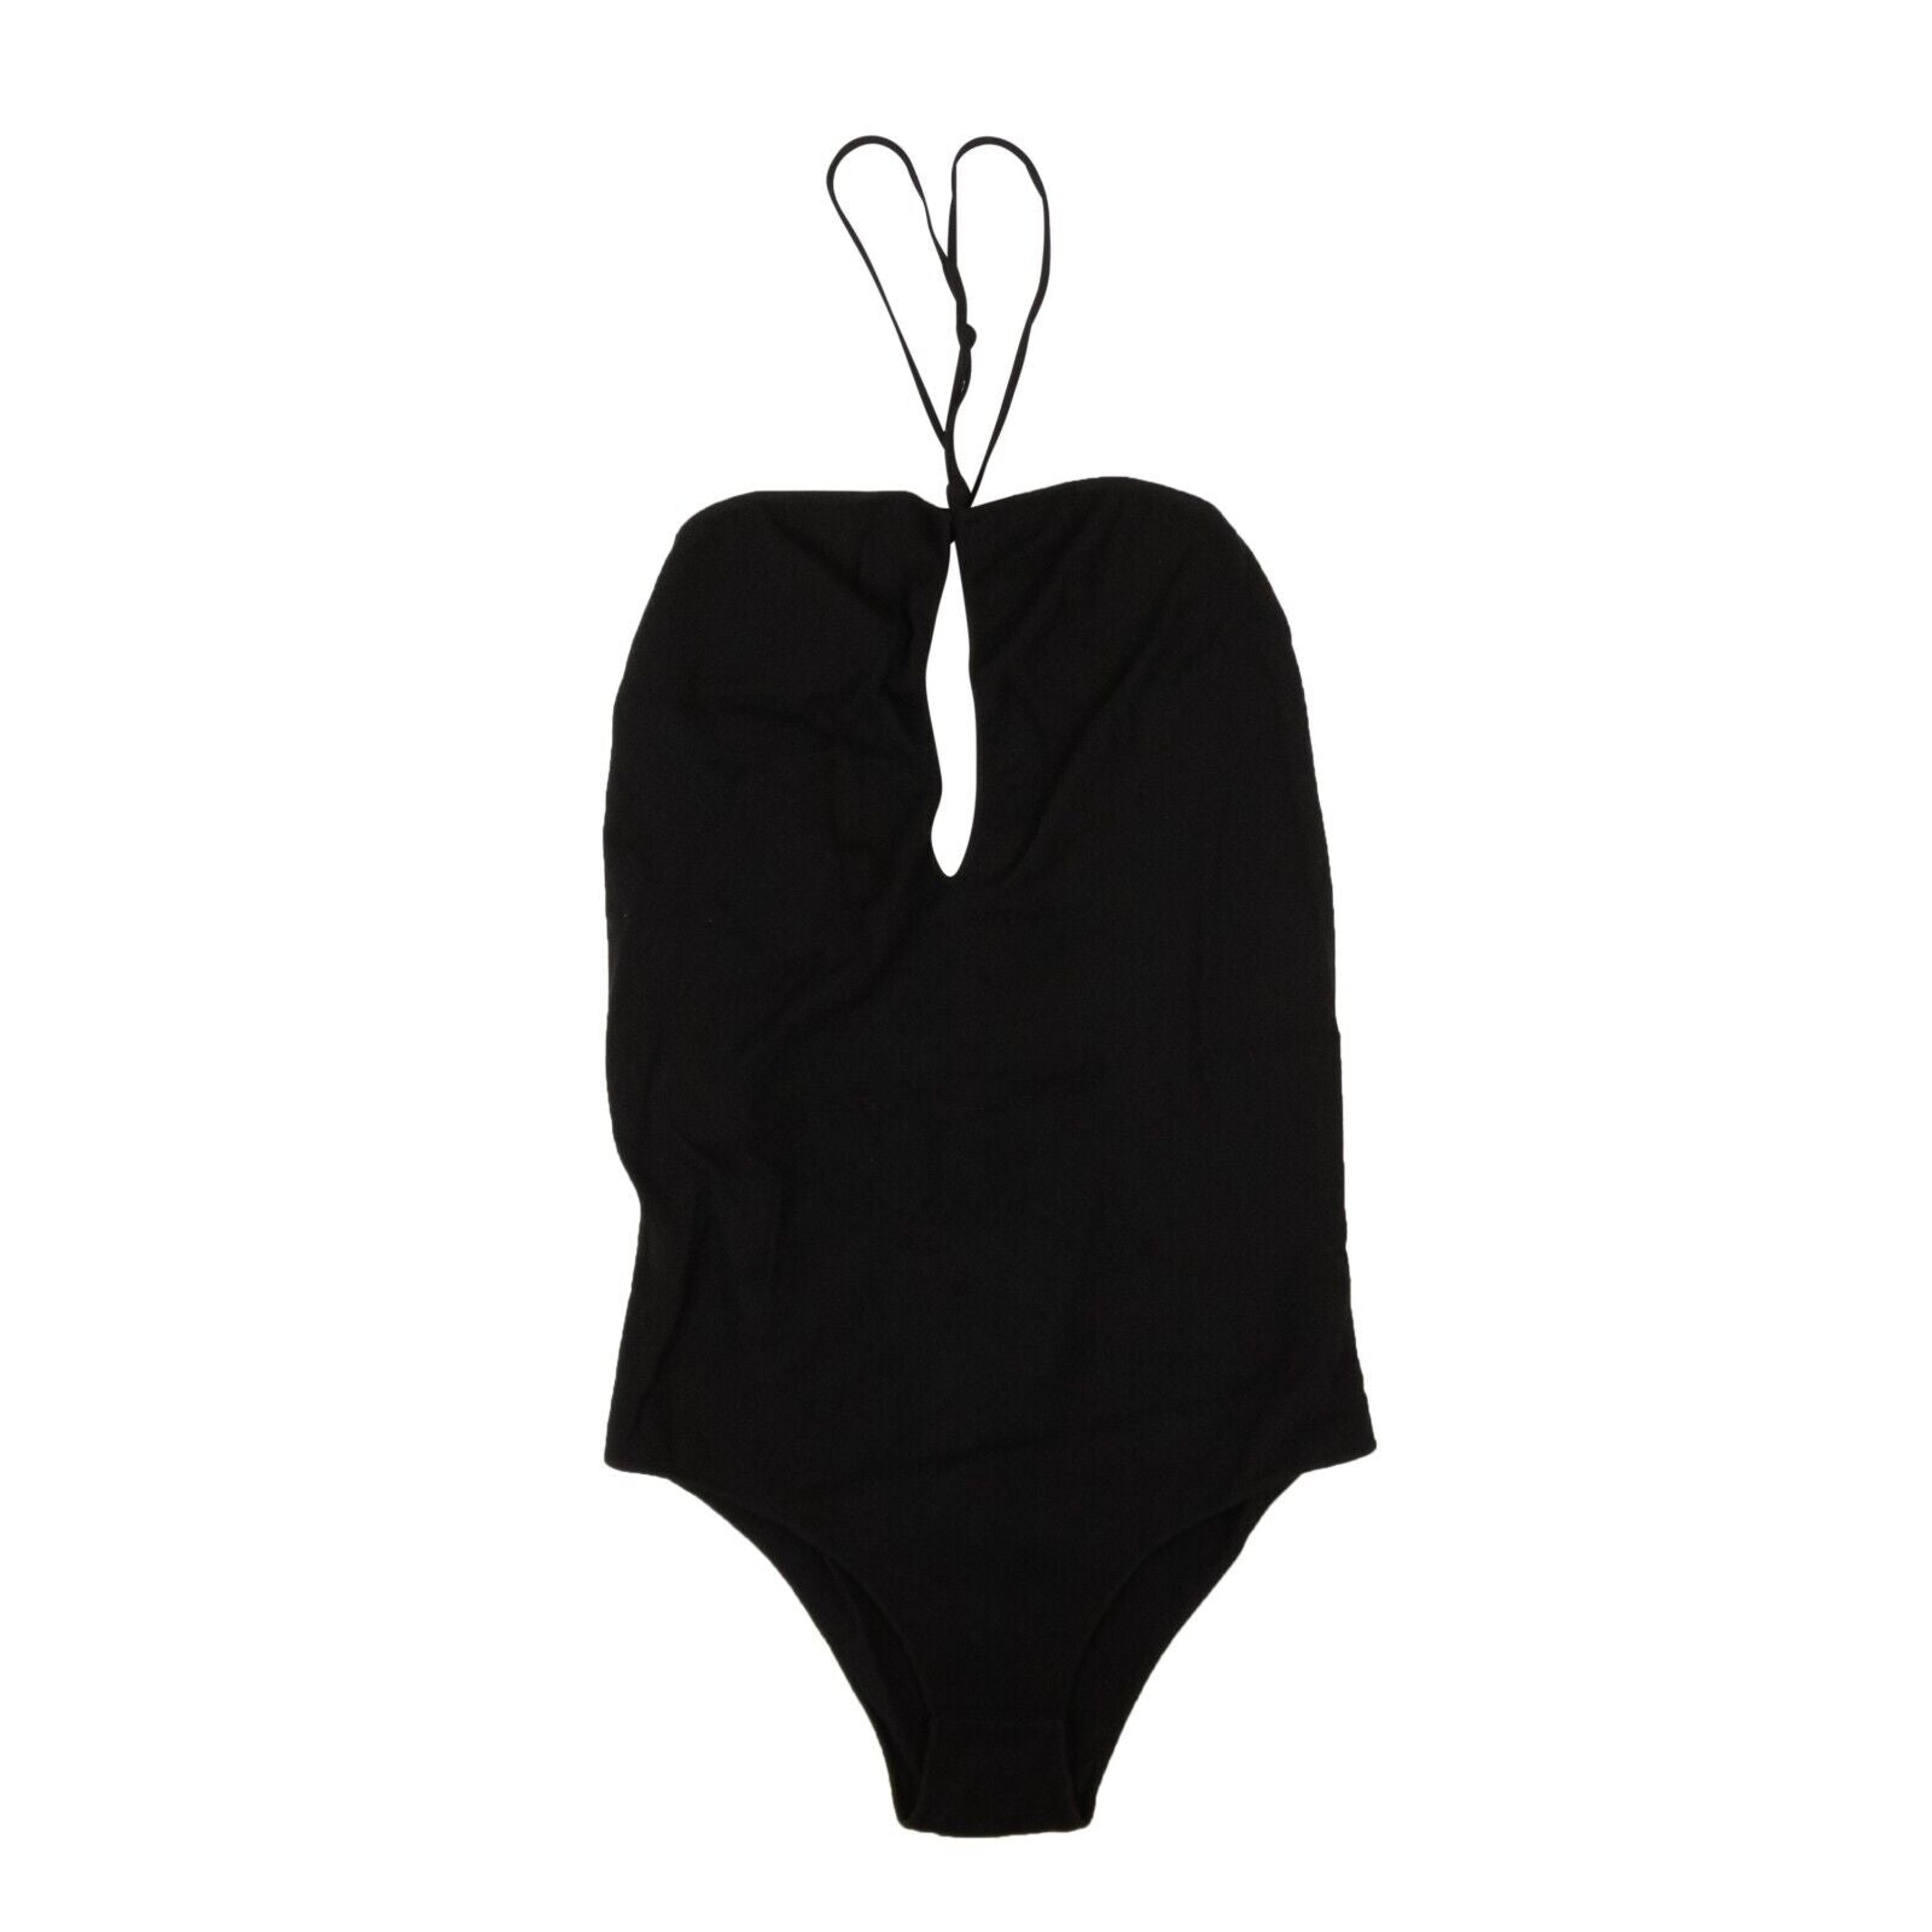 Alternate View 1 of Black Knit V-Neck Bodysuit Swimsuit